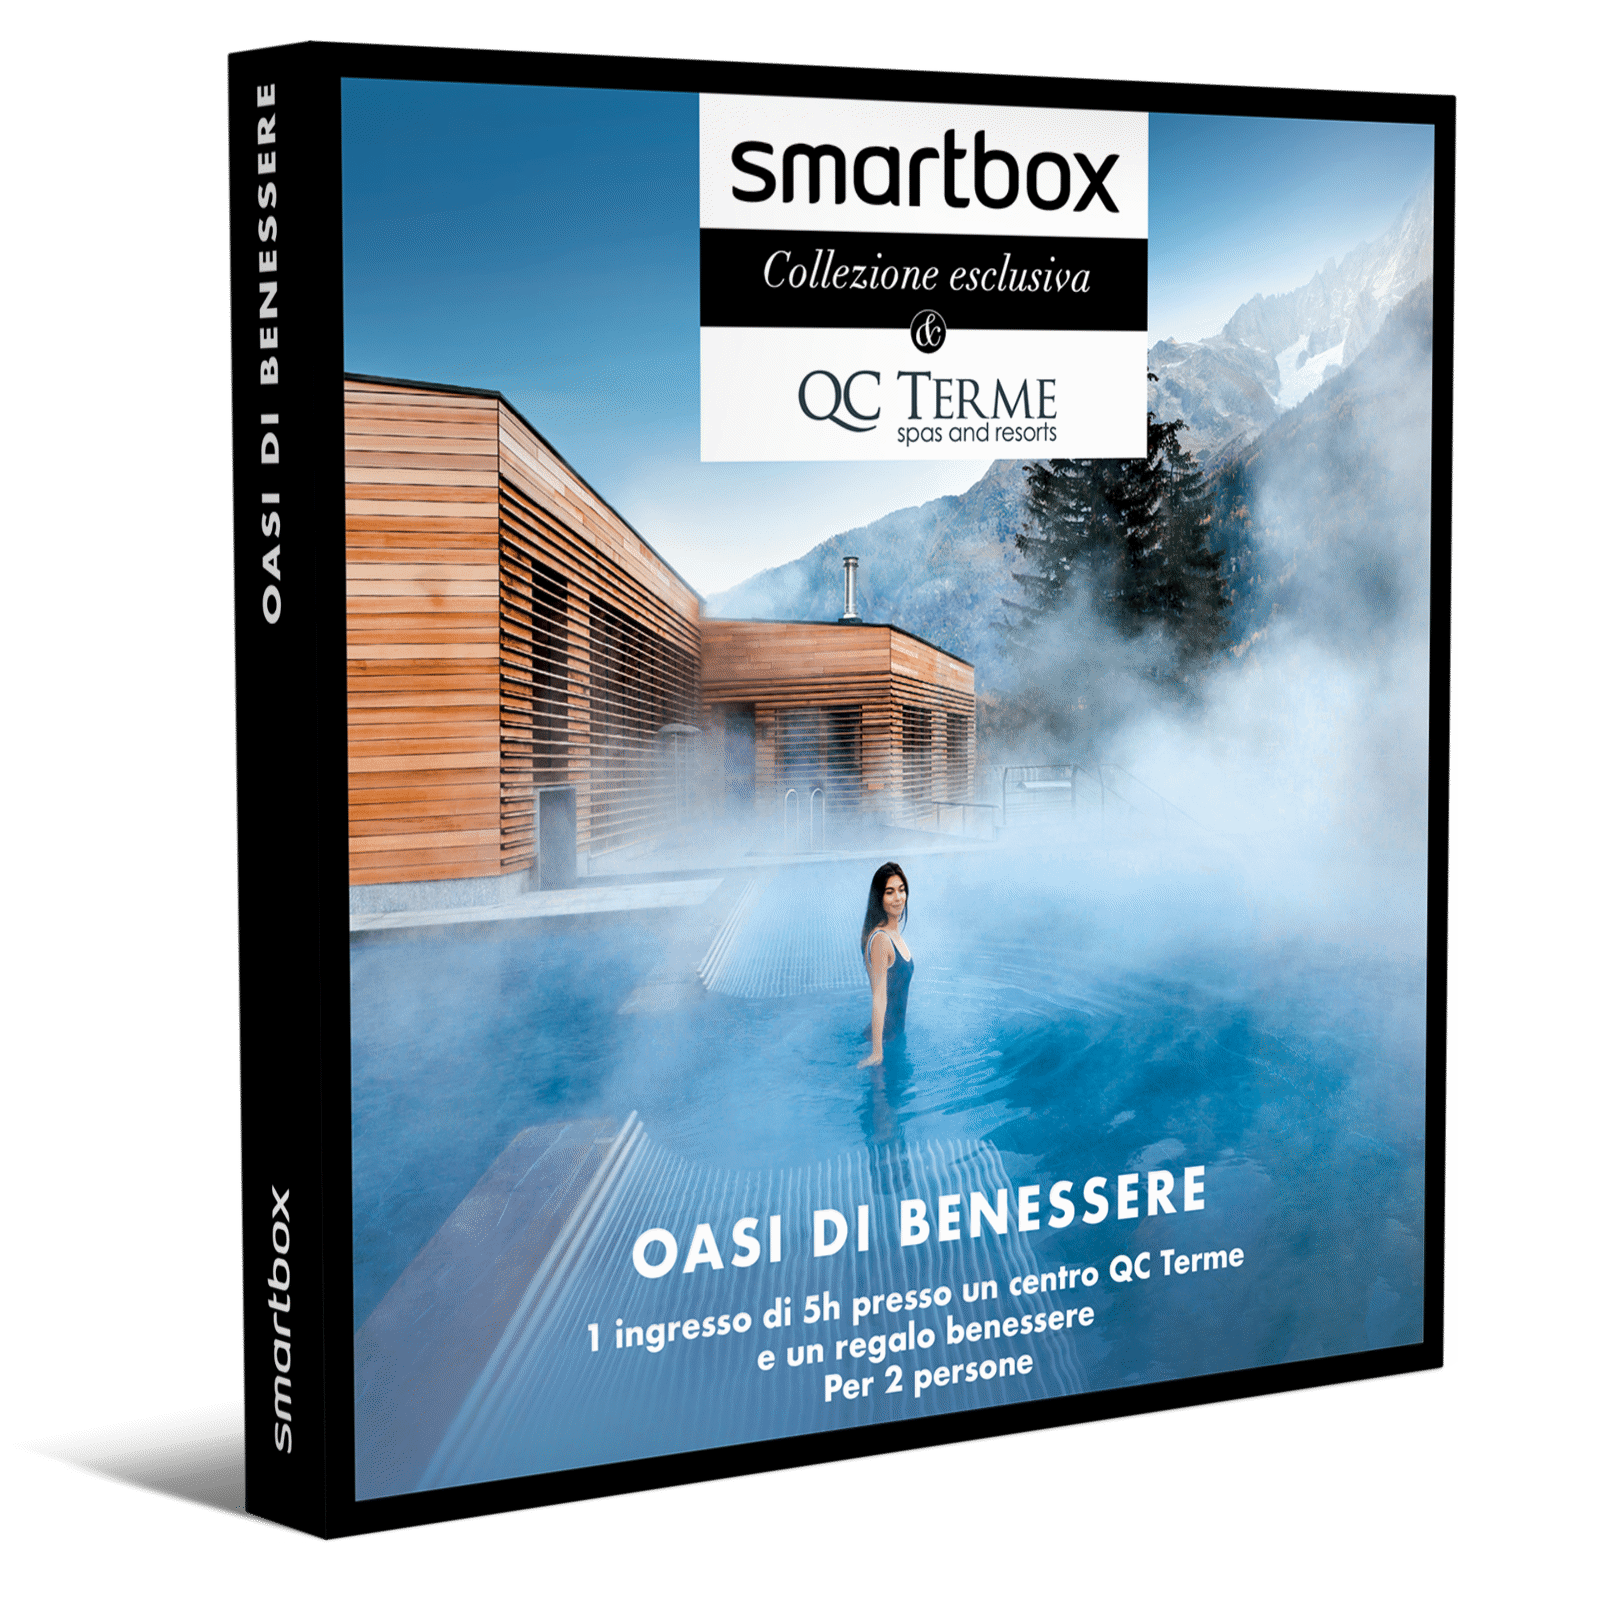 Smartbox Cofanetto - Oasi Di Benessere, Smartbox in Offerta su Stay On